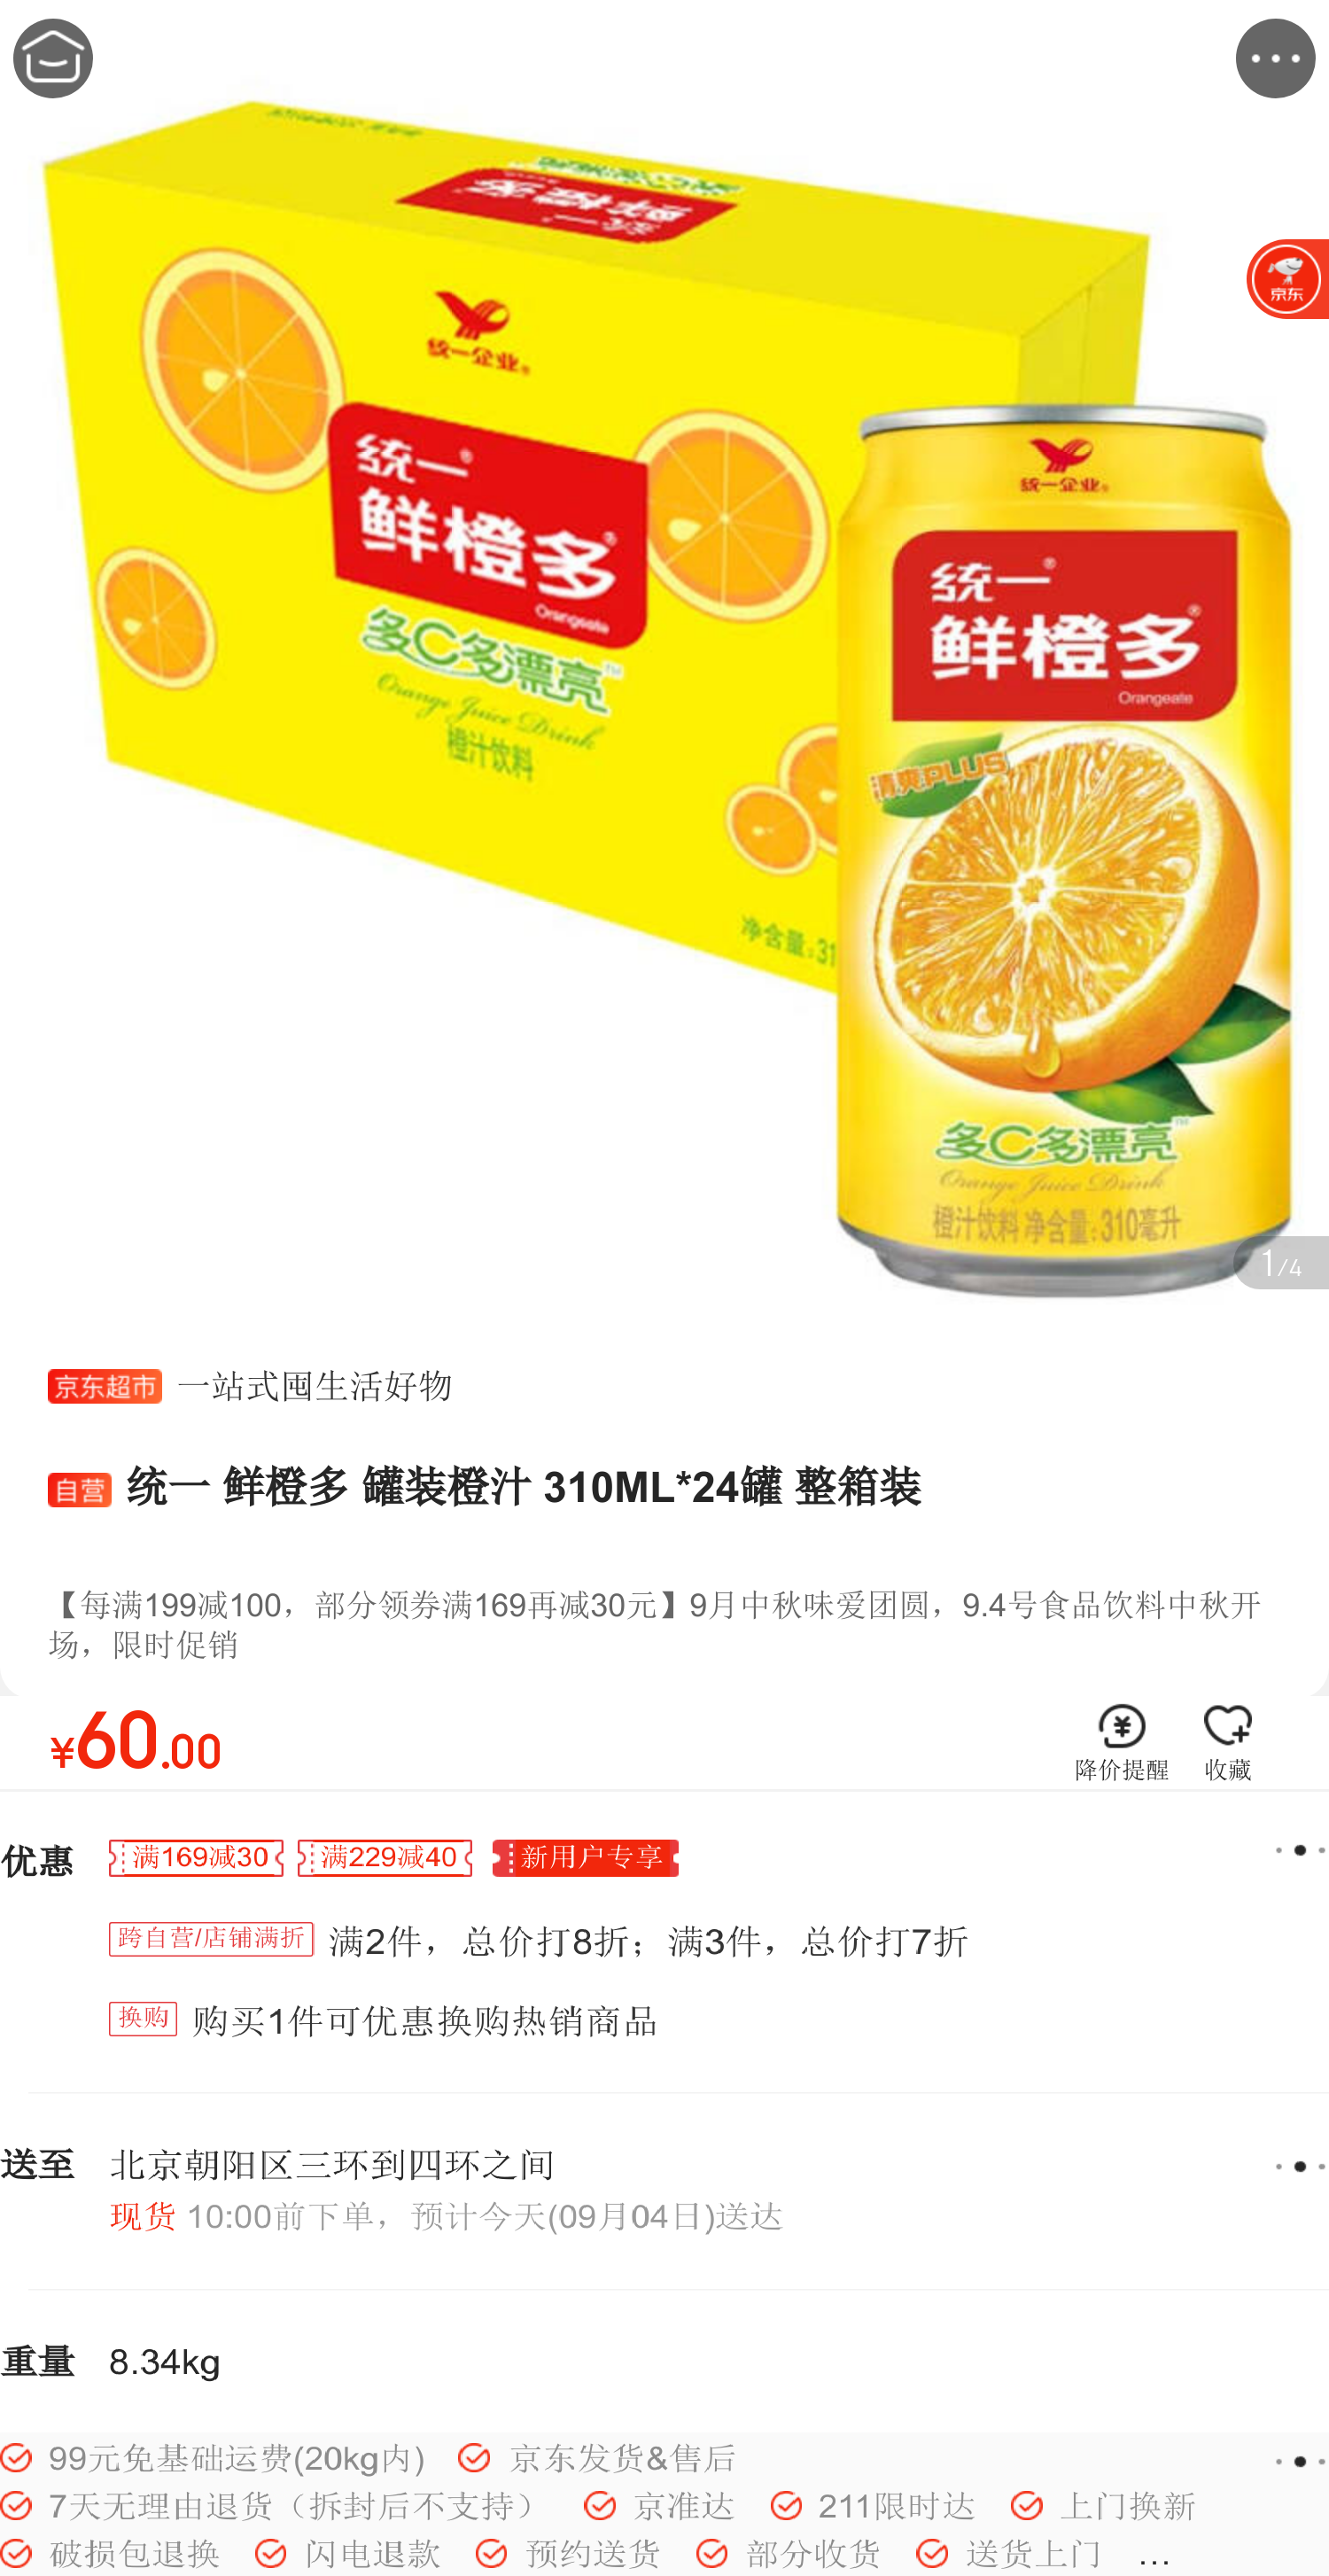 统一鲜橙多广告统一鲜橙多橙子口味新升级中国名牌维生素C瓶鲜橙多标志广告设计模板国内广告设计源文件库88DPIPSD图片素材-编号06235626-图行天下